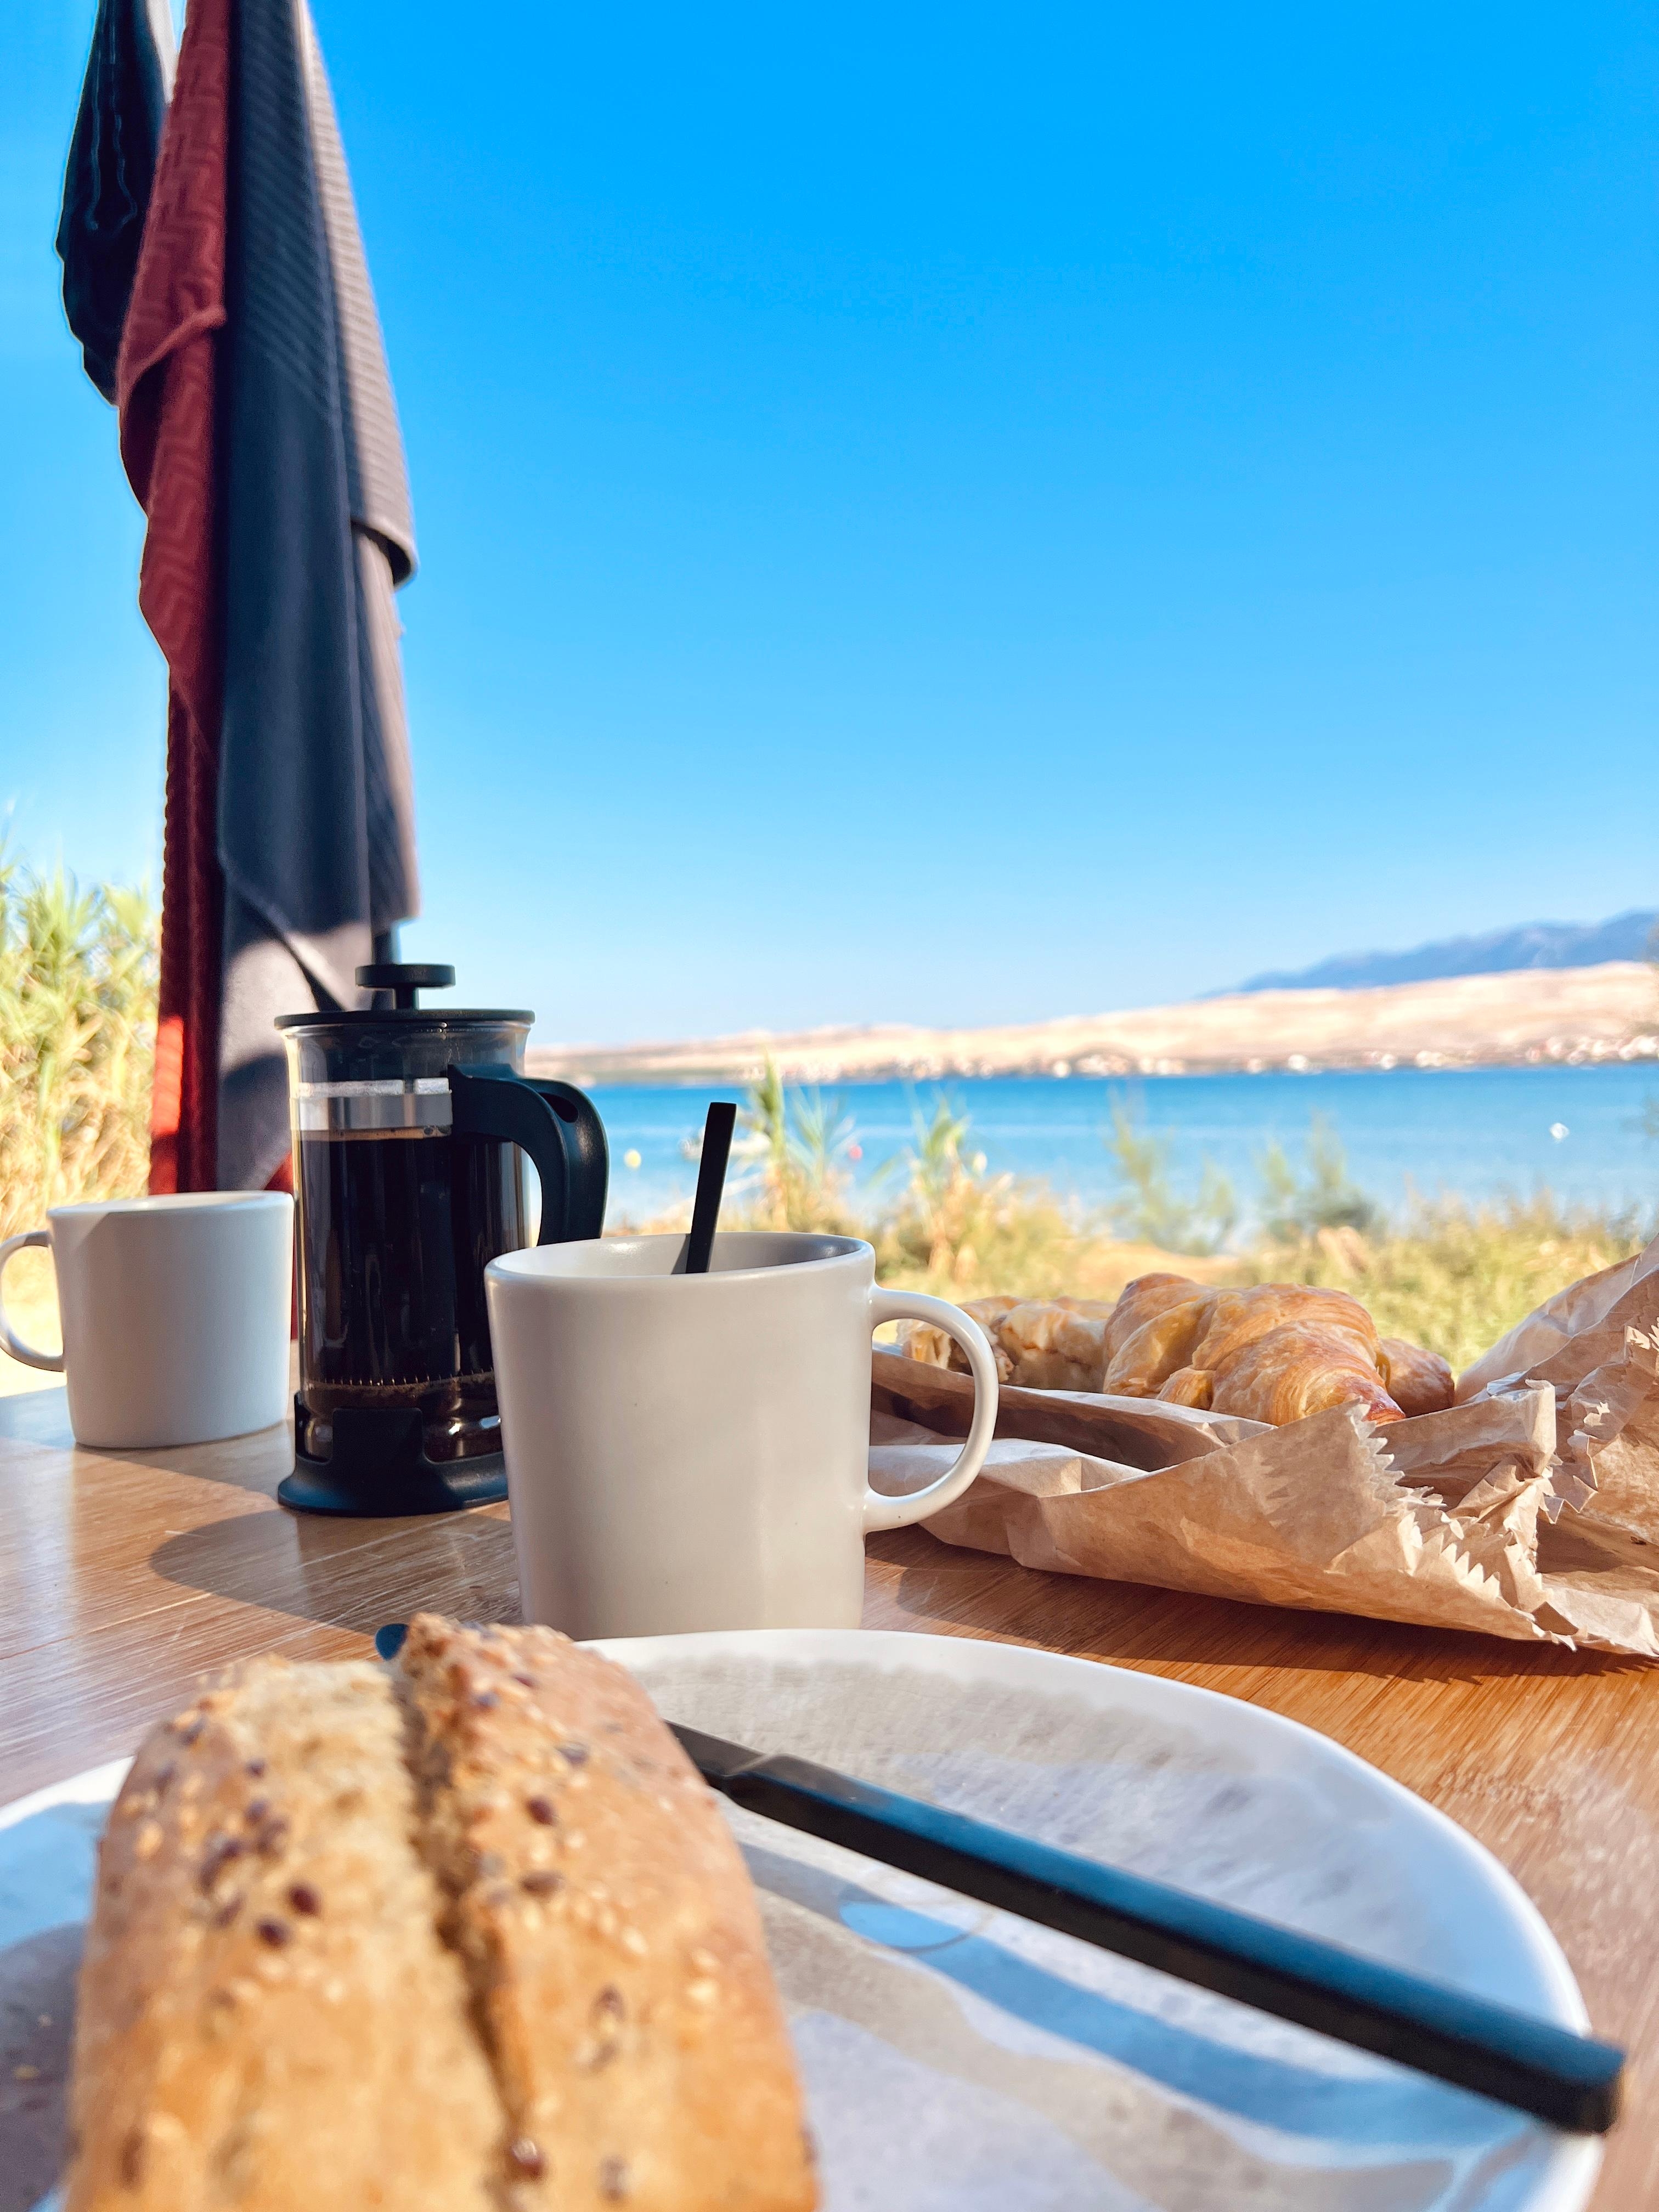 Den Ausblick hätt ich gern immer beim Frühstück ☕️ #kaffeeliebe #livingchallenge #camping #kroatien